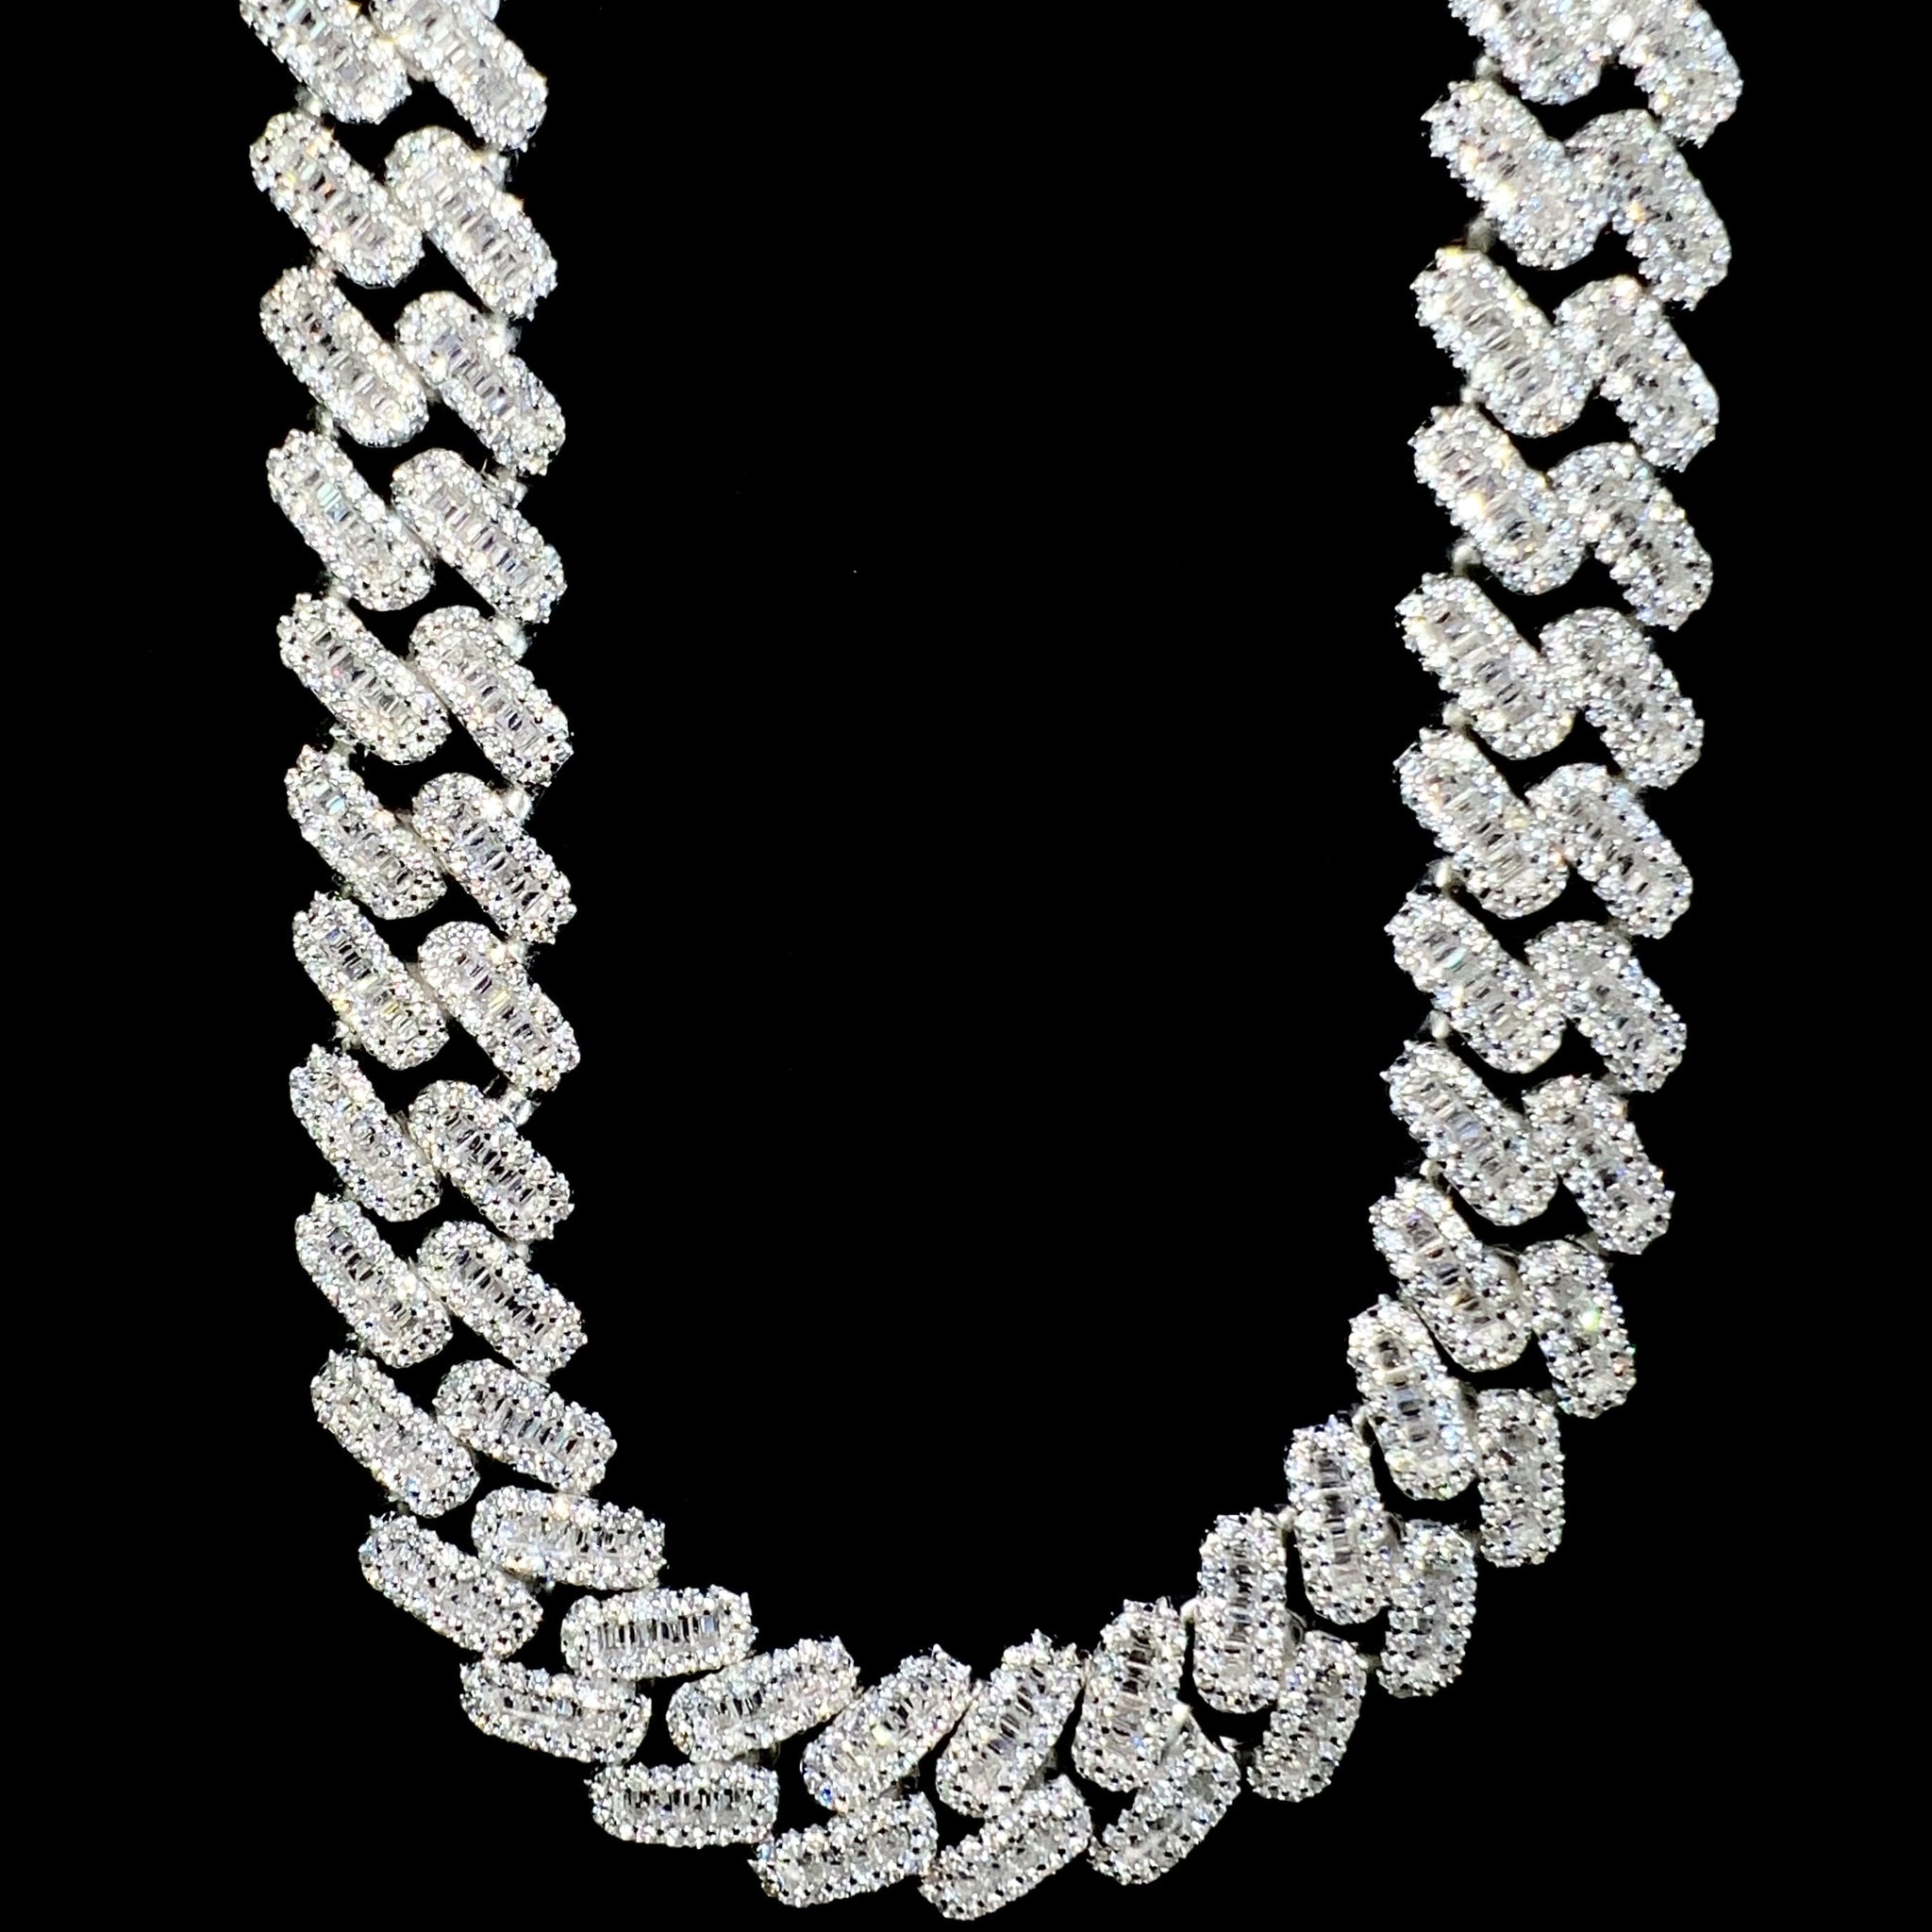 Baguette Cuban Prong Link Chain - 60cm / 12mm - Silver 925 - Sehgal Dubai Collection